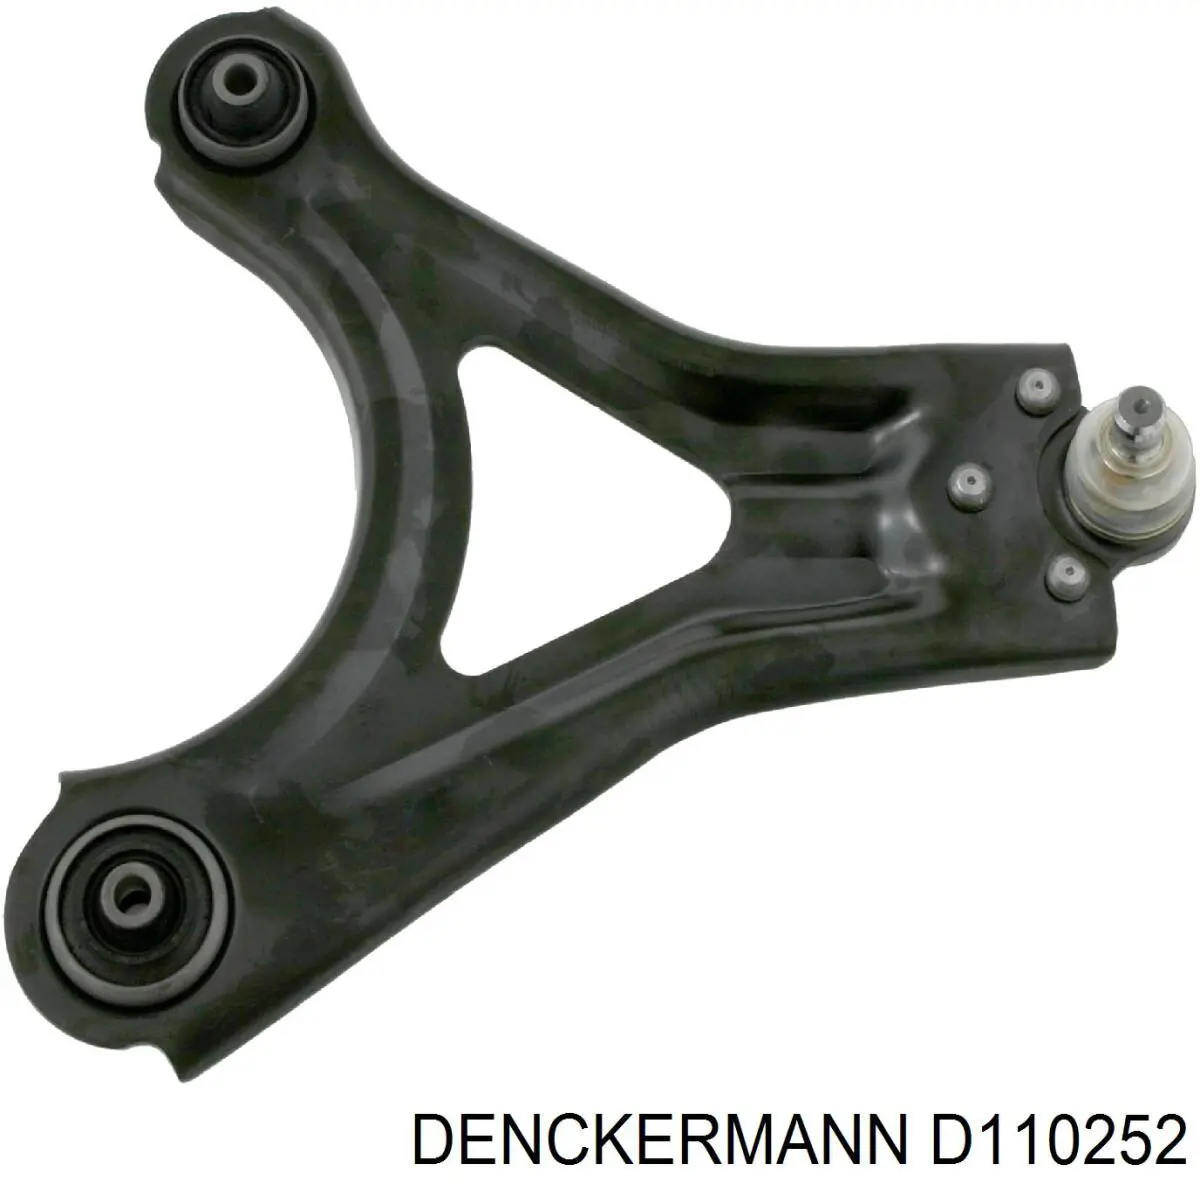 D110252 Denckermann rótula de suspensión inferior